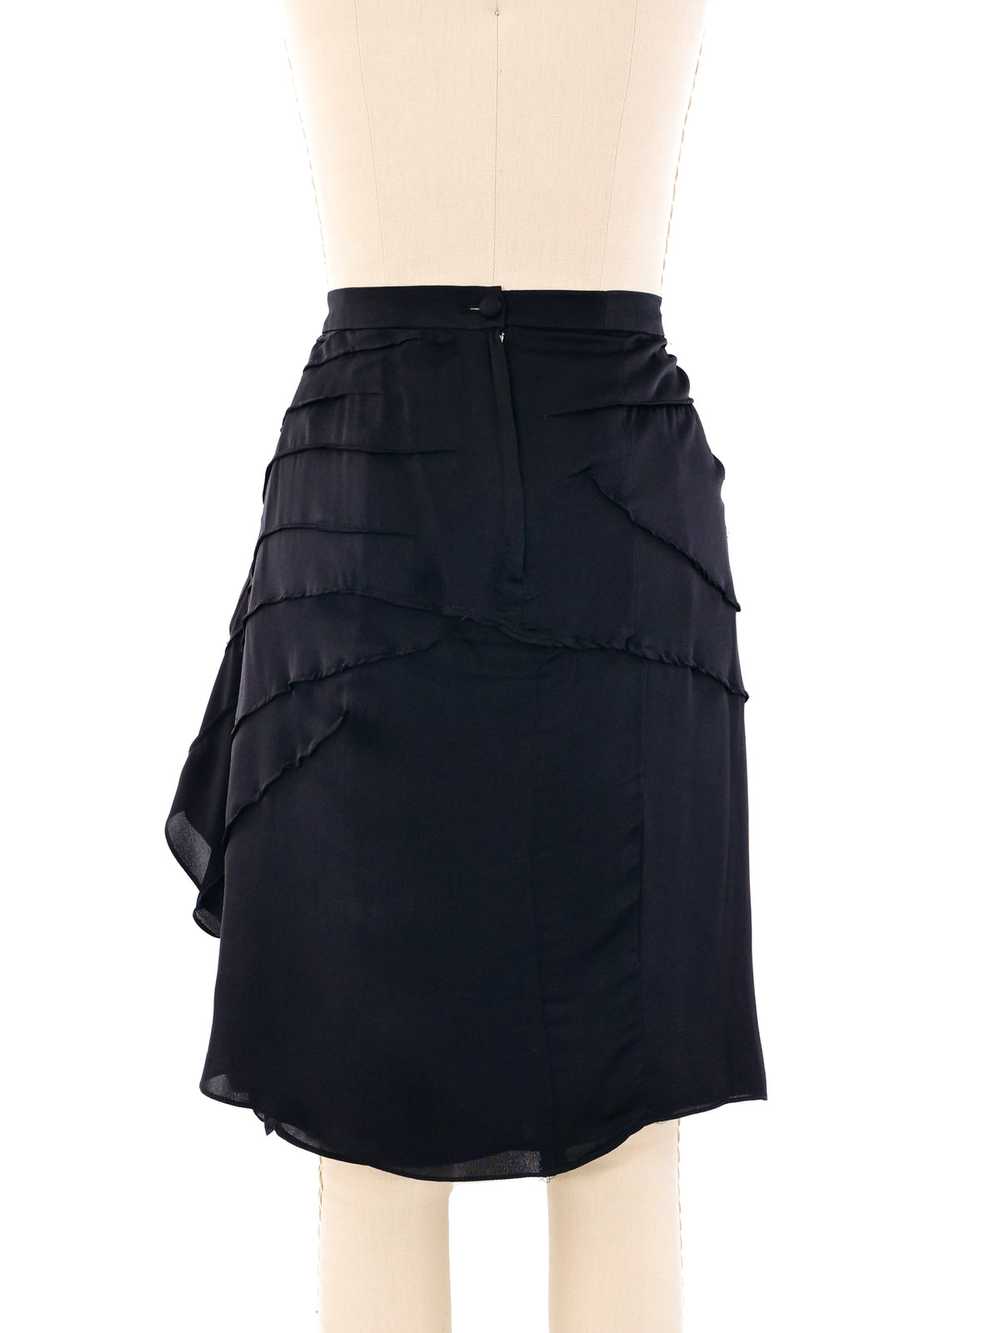 Yves Saint Laurent Ruffled Silk Skirt - image 2